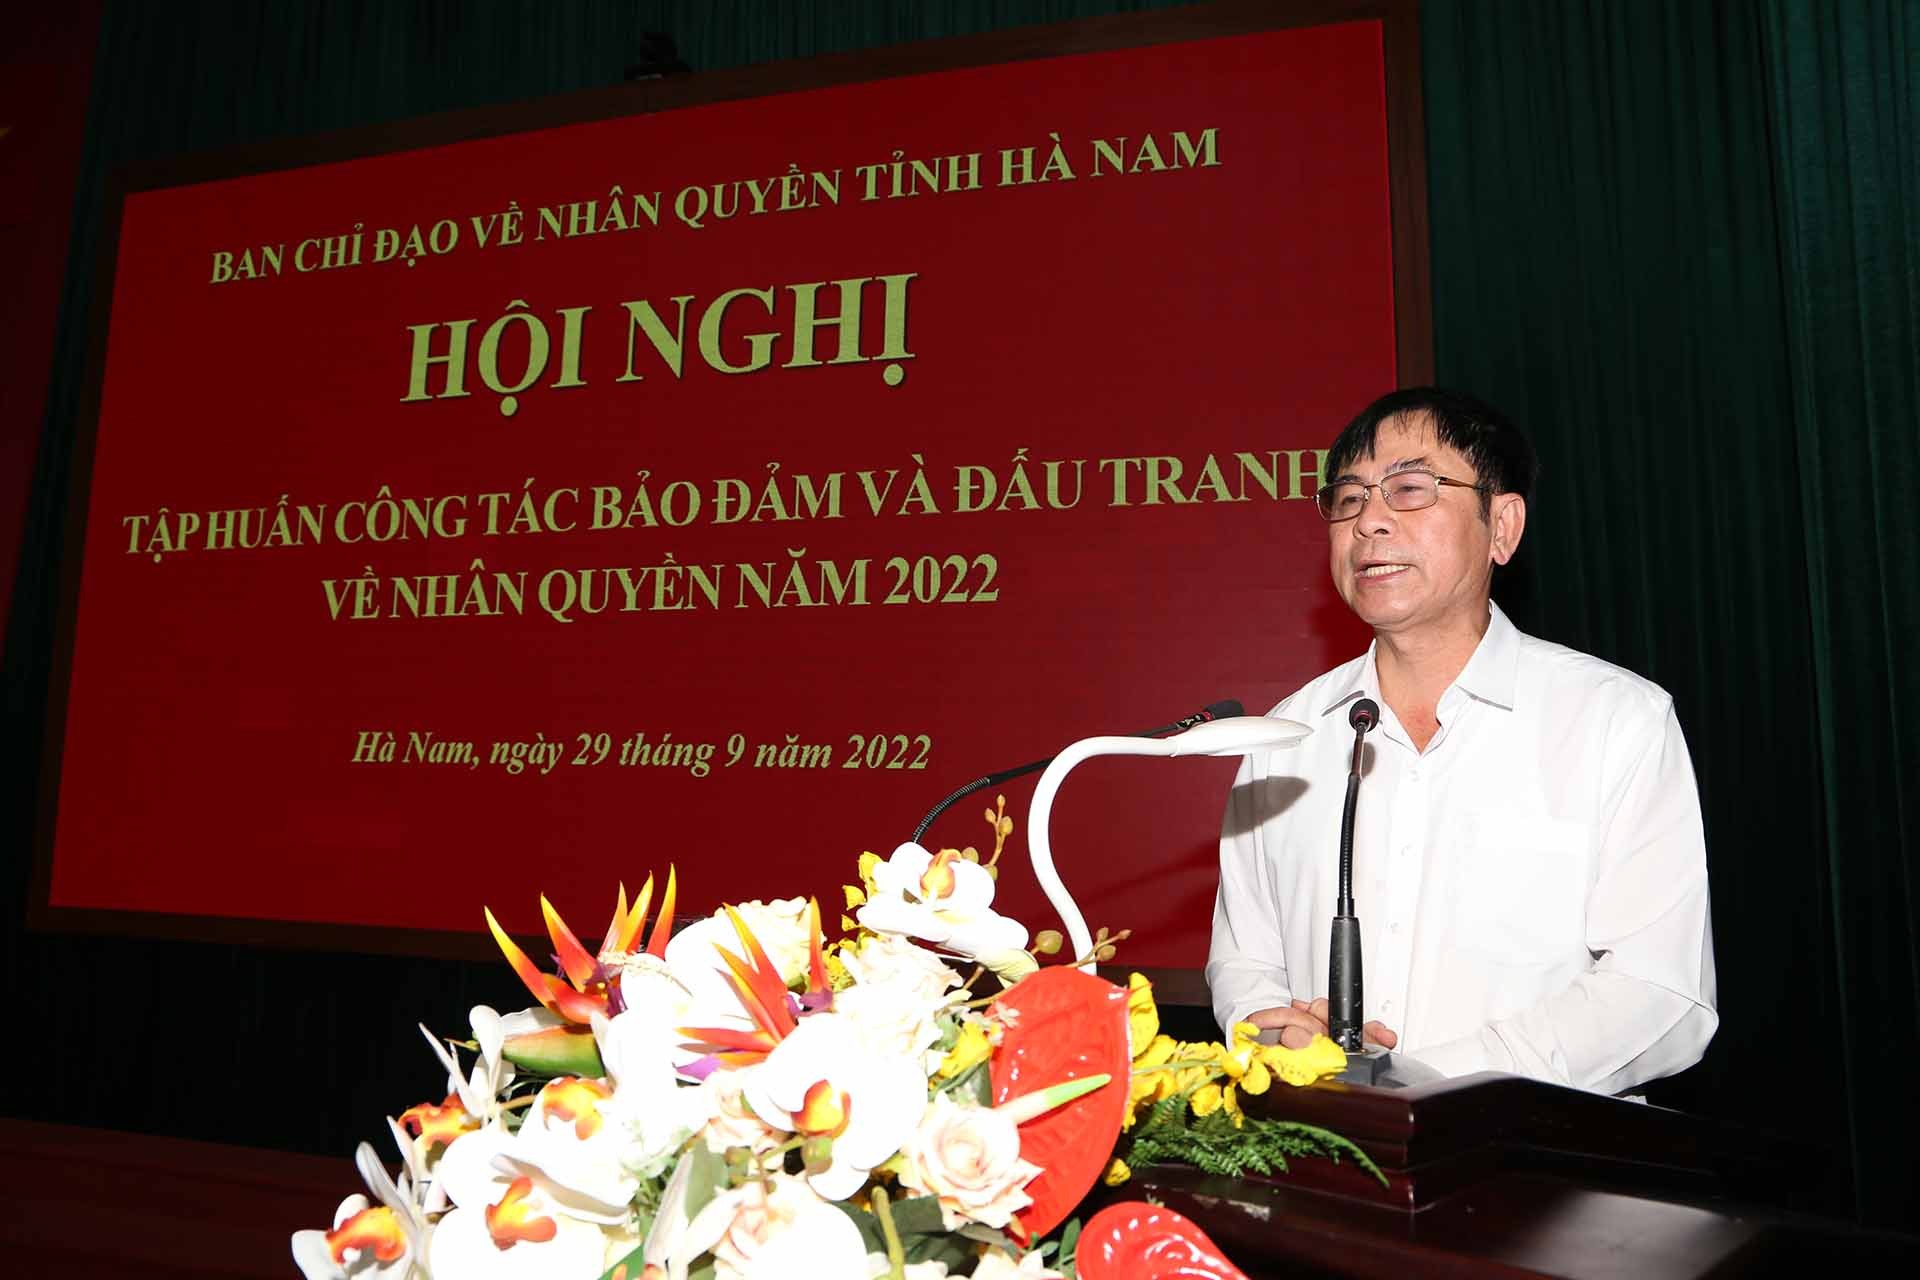 Thiếu tướng Nguyễn Văn Kỷ, Phó Chánh Văn phòng Thường trực Ban Chỉ đạo về Nhân quyền của Chính phủ, Phó Cục trưởng Cục Đối ngoại, Bộ Công an phát biểu.